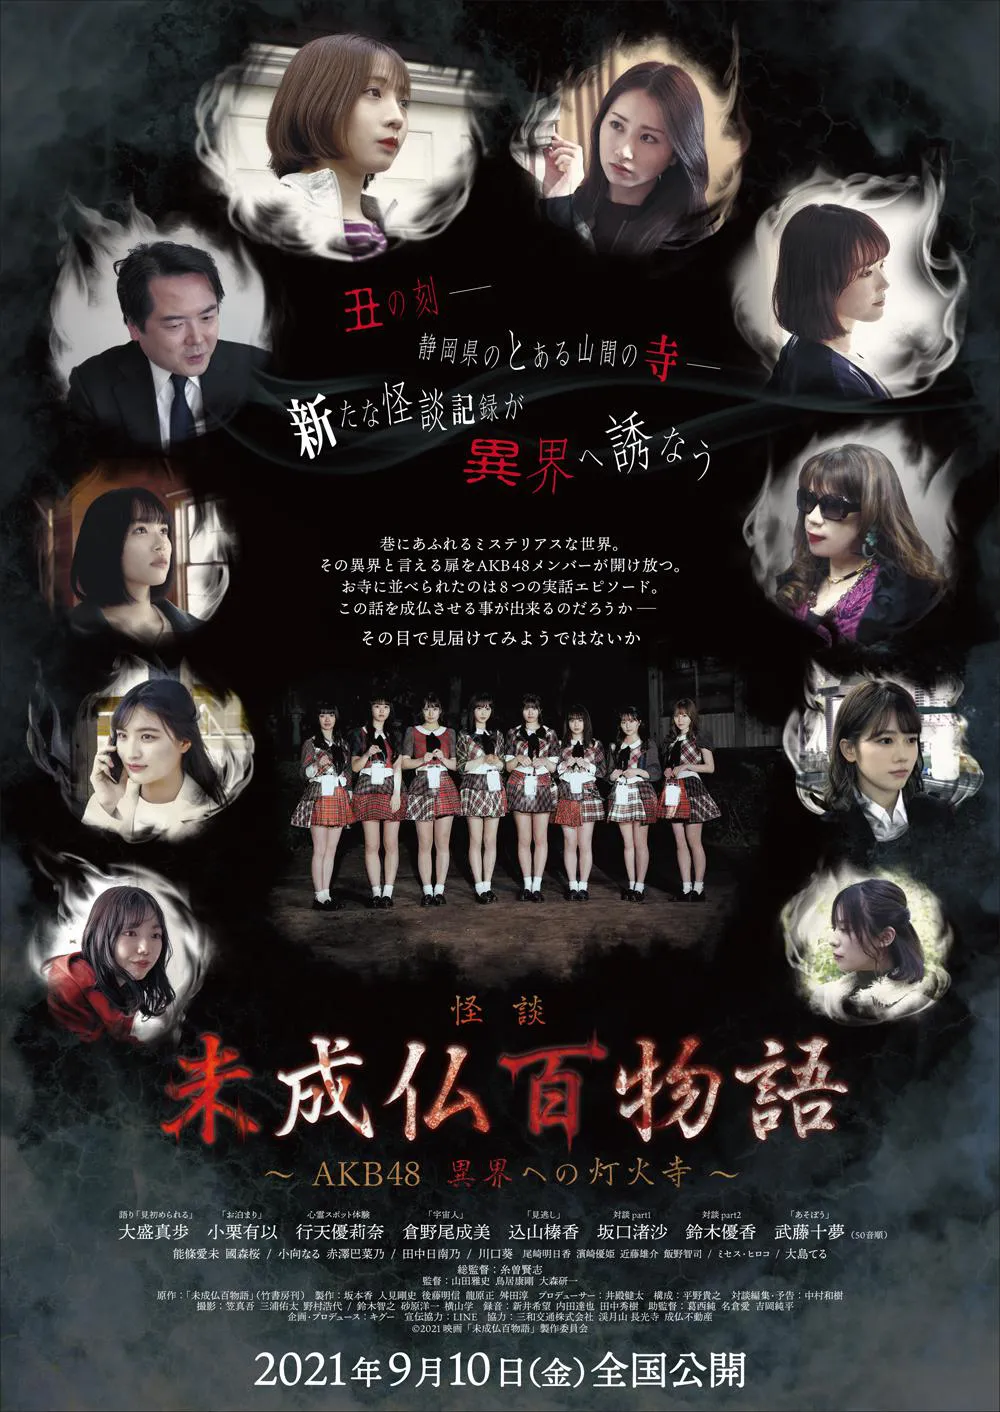 映画「未成仏百物語～AKB48 異界への灯火寺～」は9月10日(金)全国公開